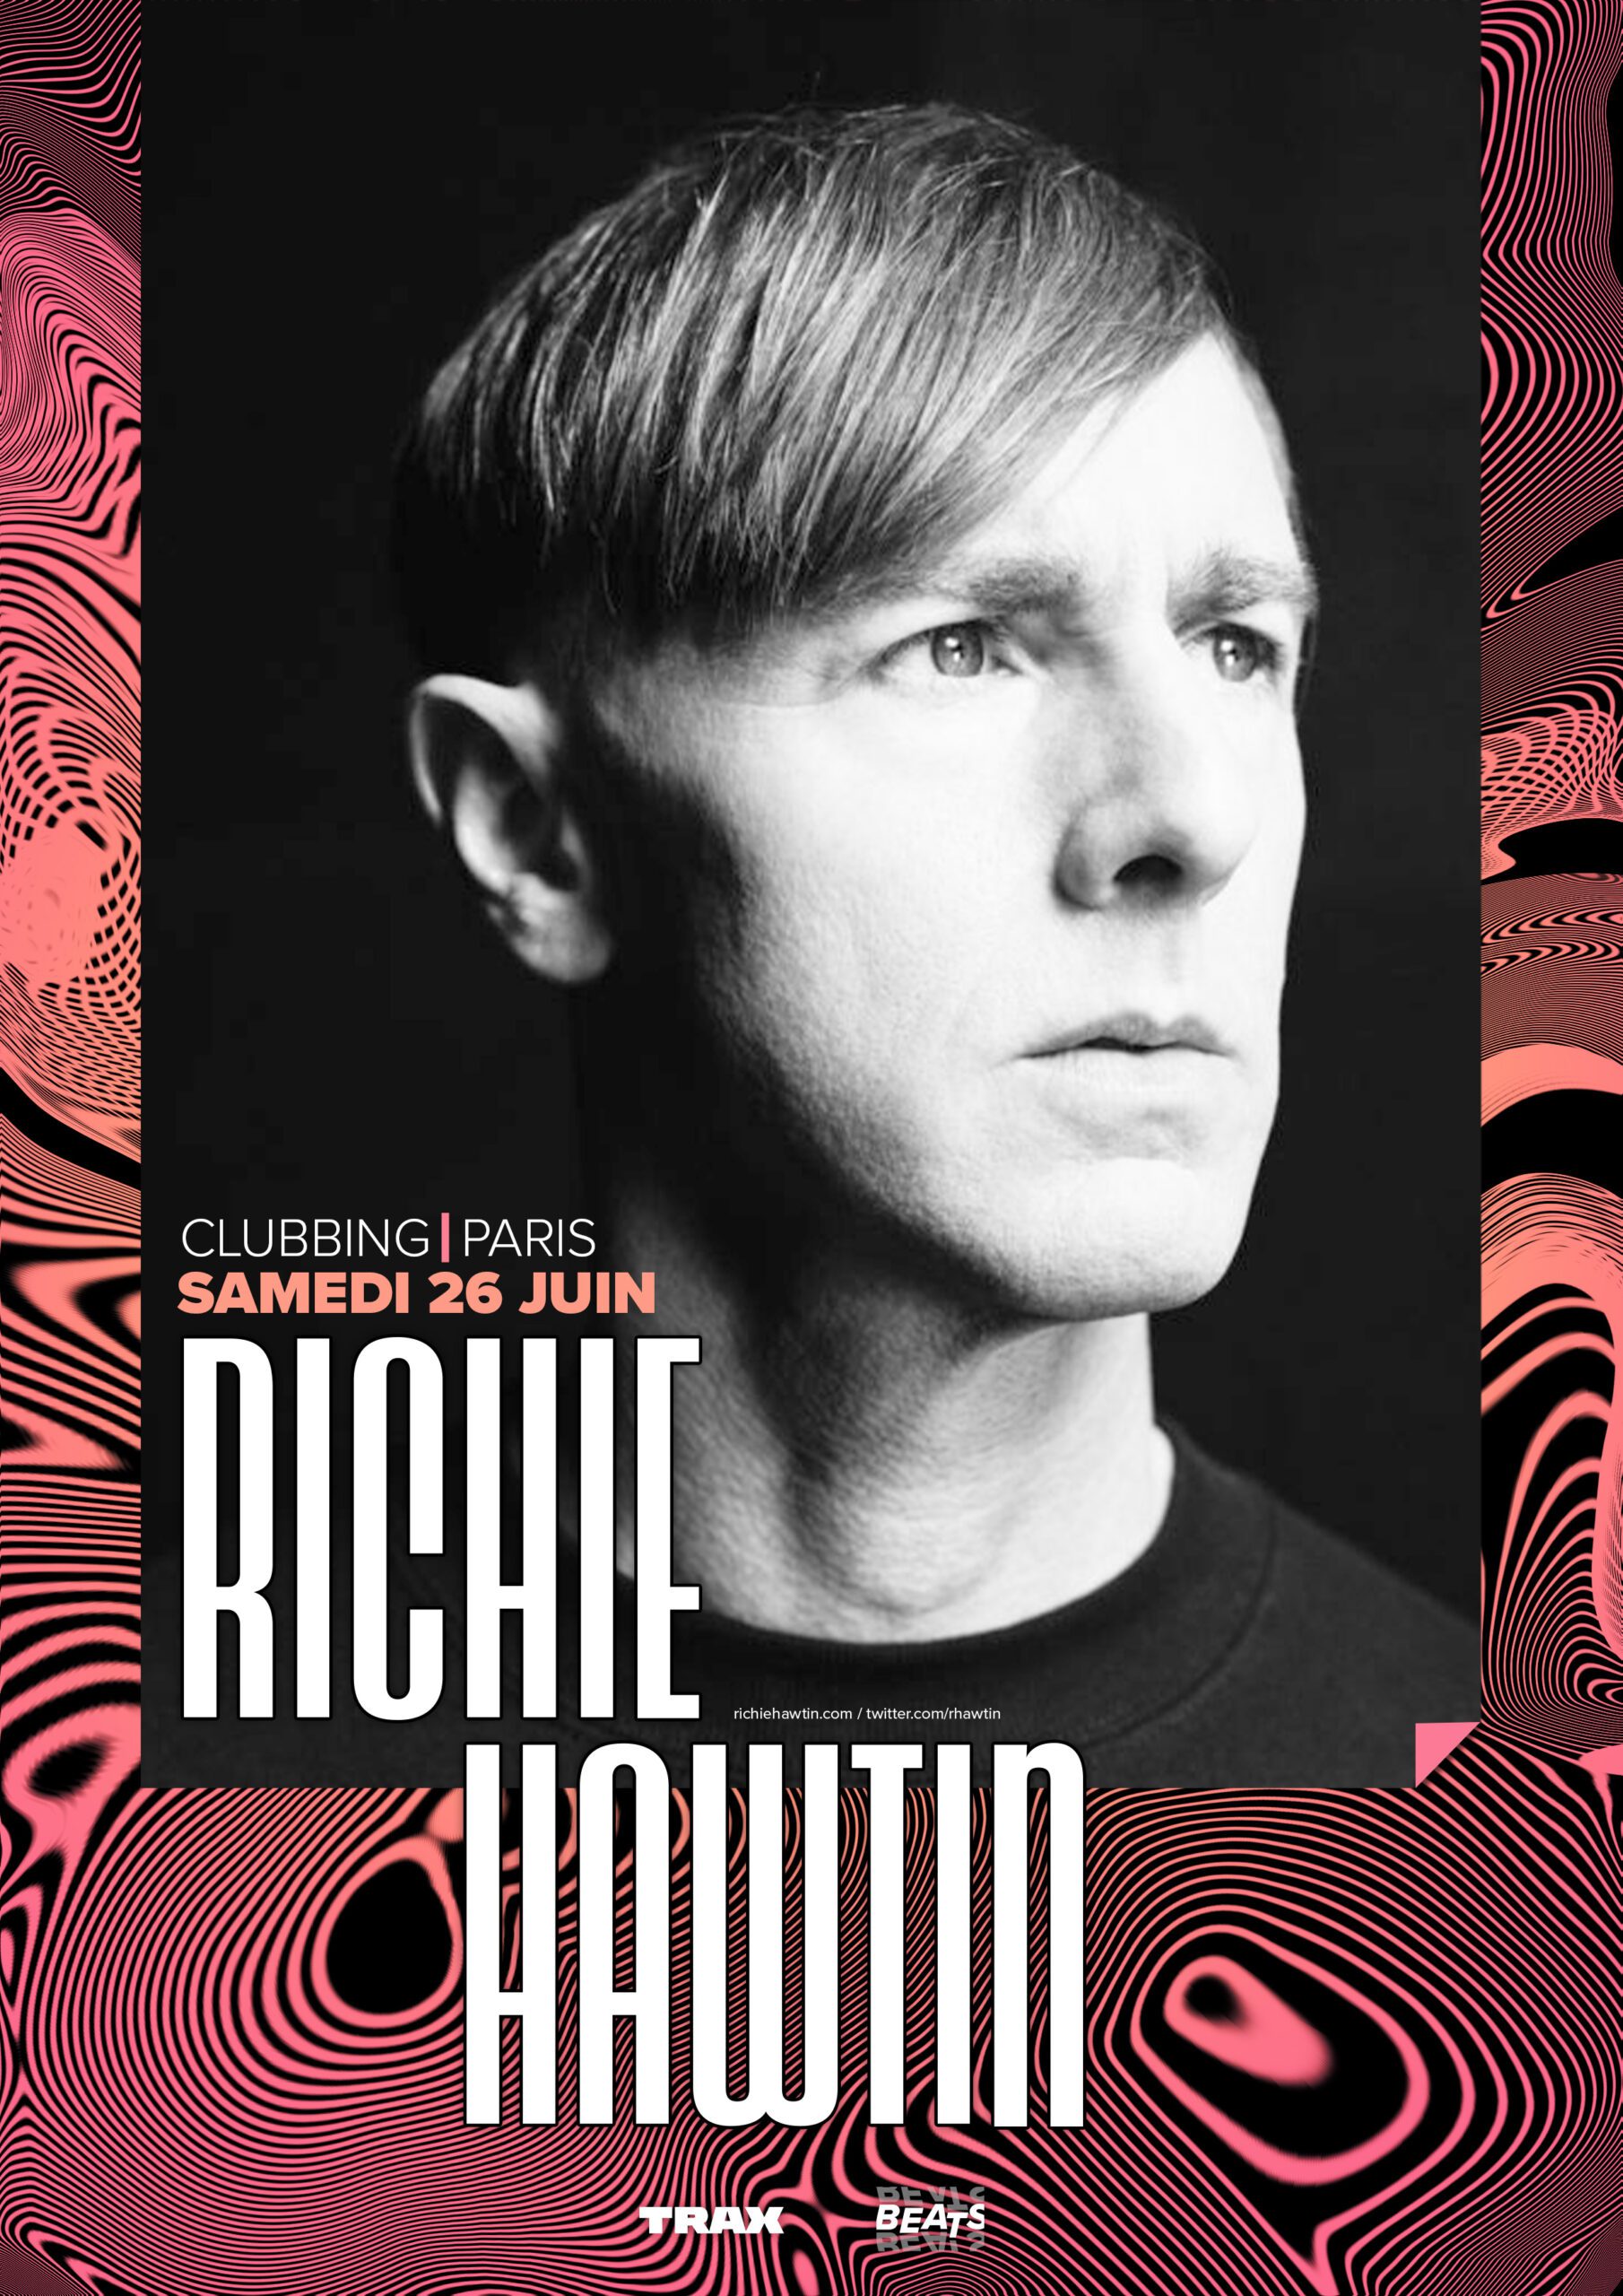 Affiche Clubbing Paris - Richie Hawtin